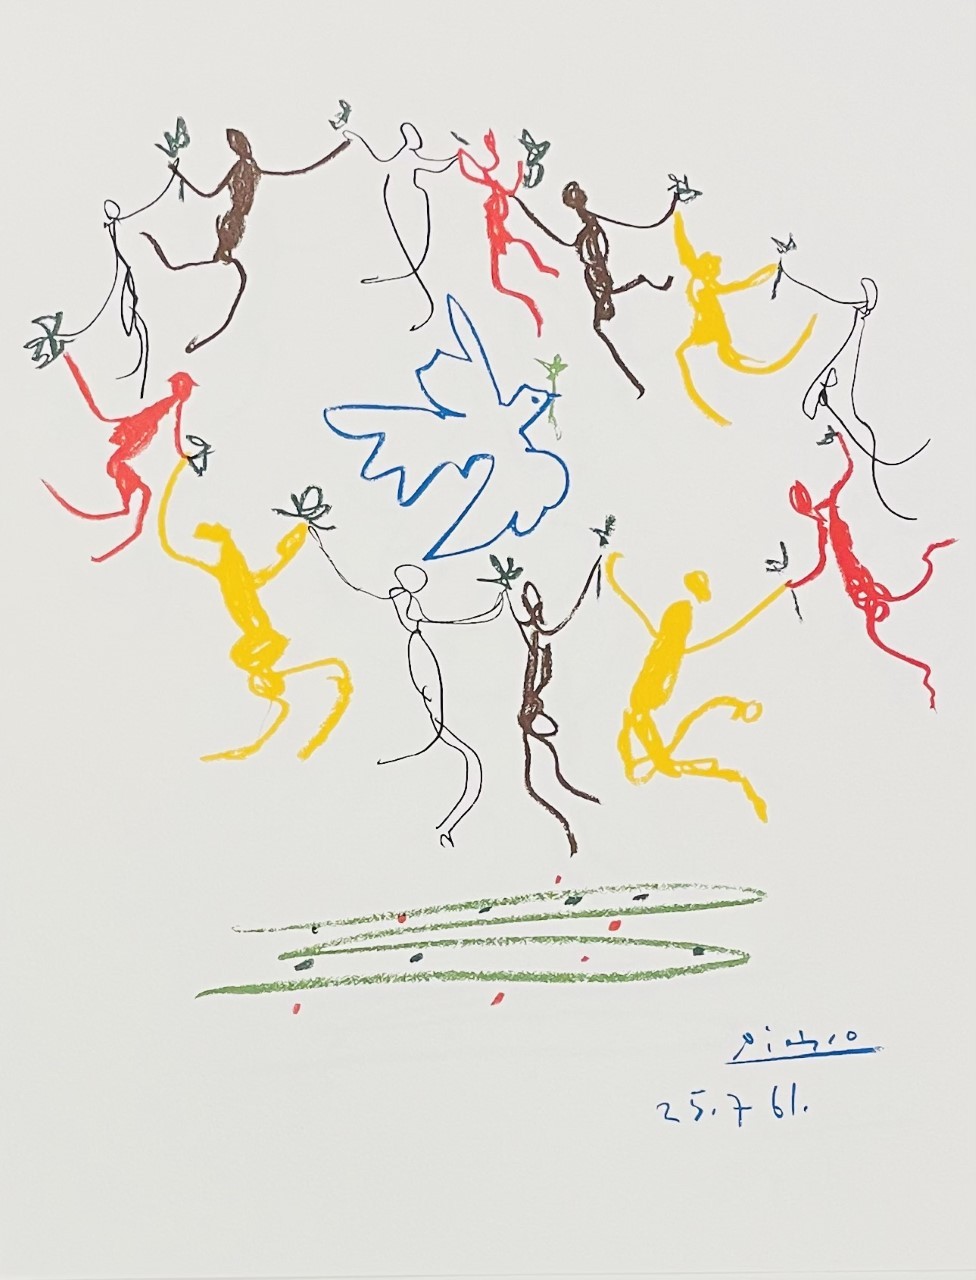 LA RONDE DE LA COLOMBE - PICASSO Pablo (d'aprés) (1881 - 1973) - Lithographie